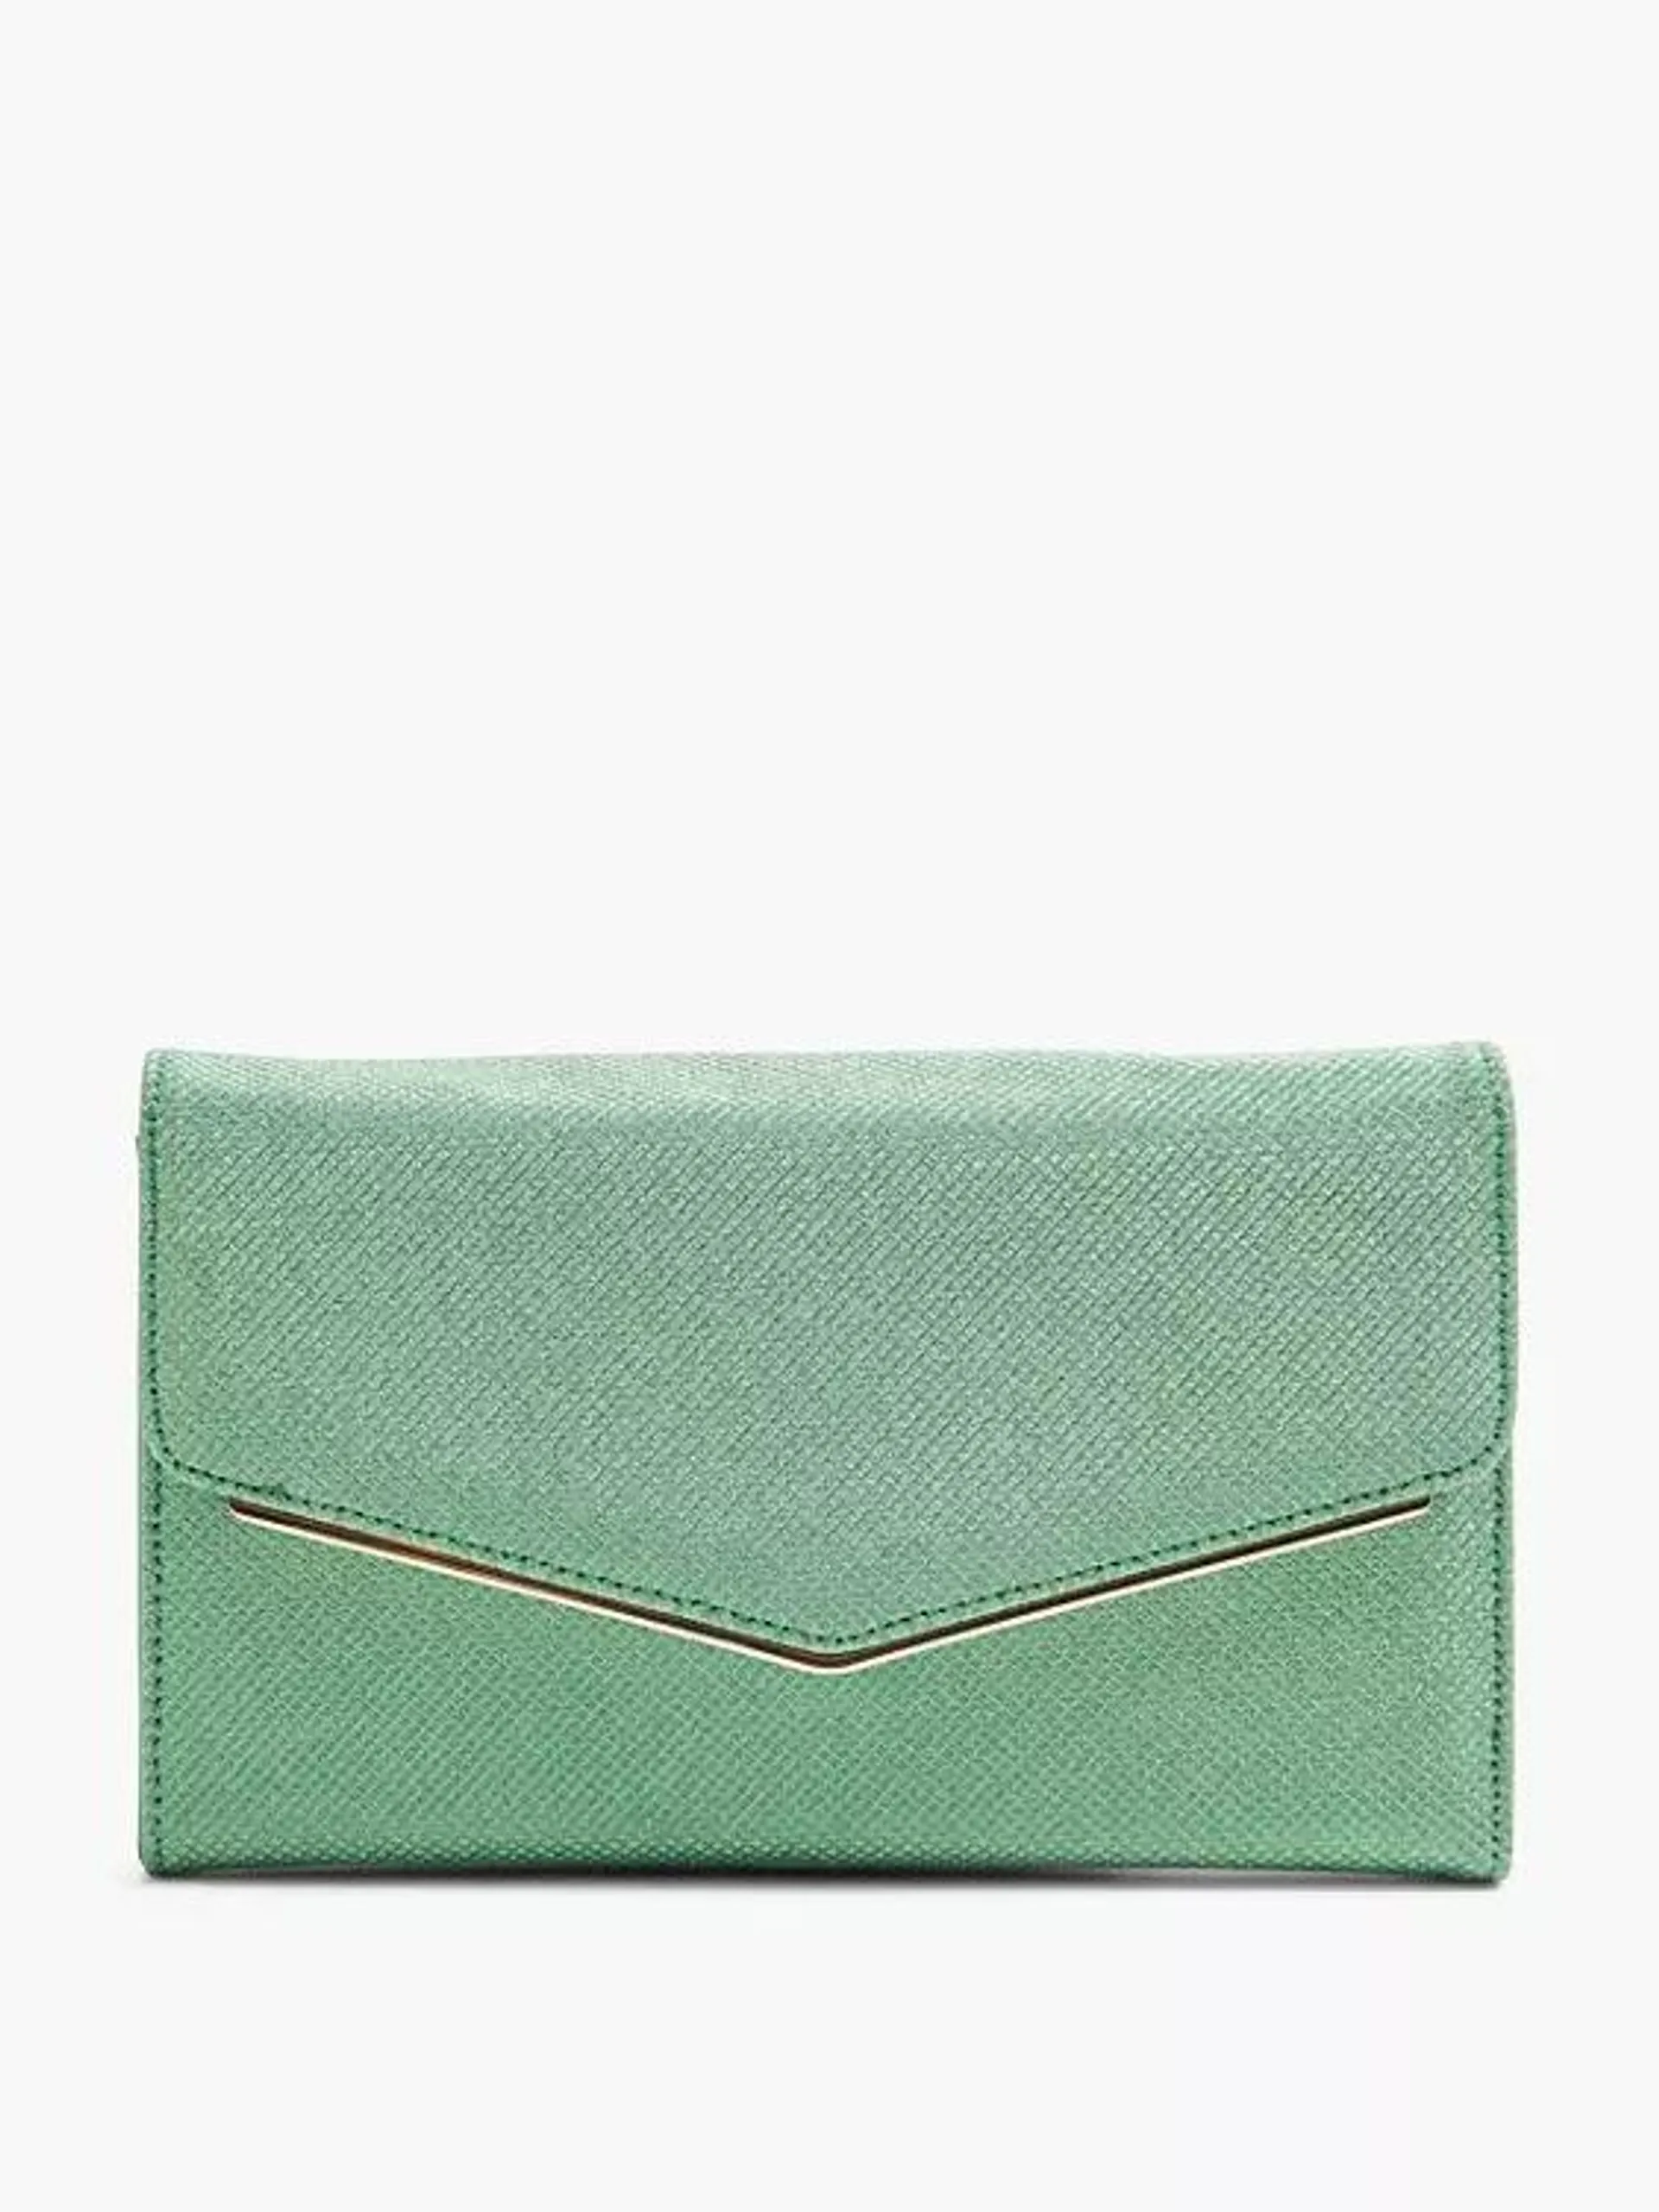 Green Glitter Clutch Bag